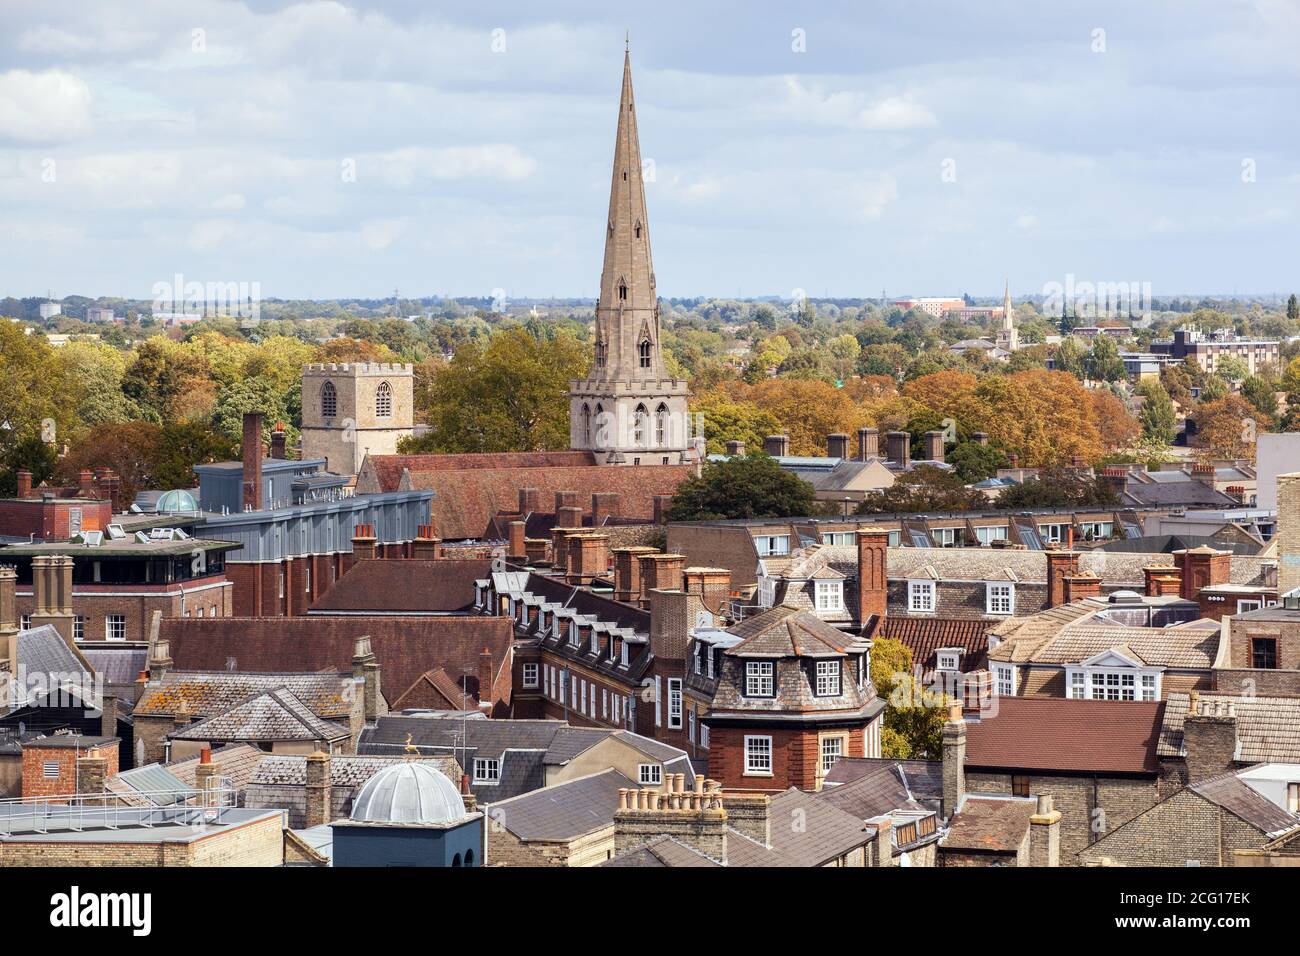 Vista aérea desde arriba de las iglesias históricas de los collages y edificios universitarios de la ciudad de Cambridge, tomada de la torre de la Iglesia de Santa María Foto de stock